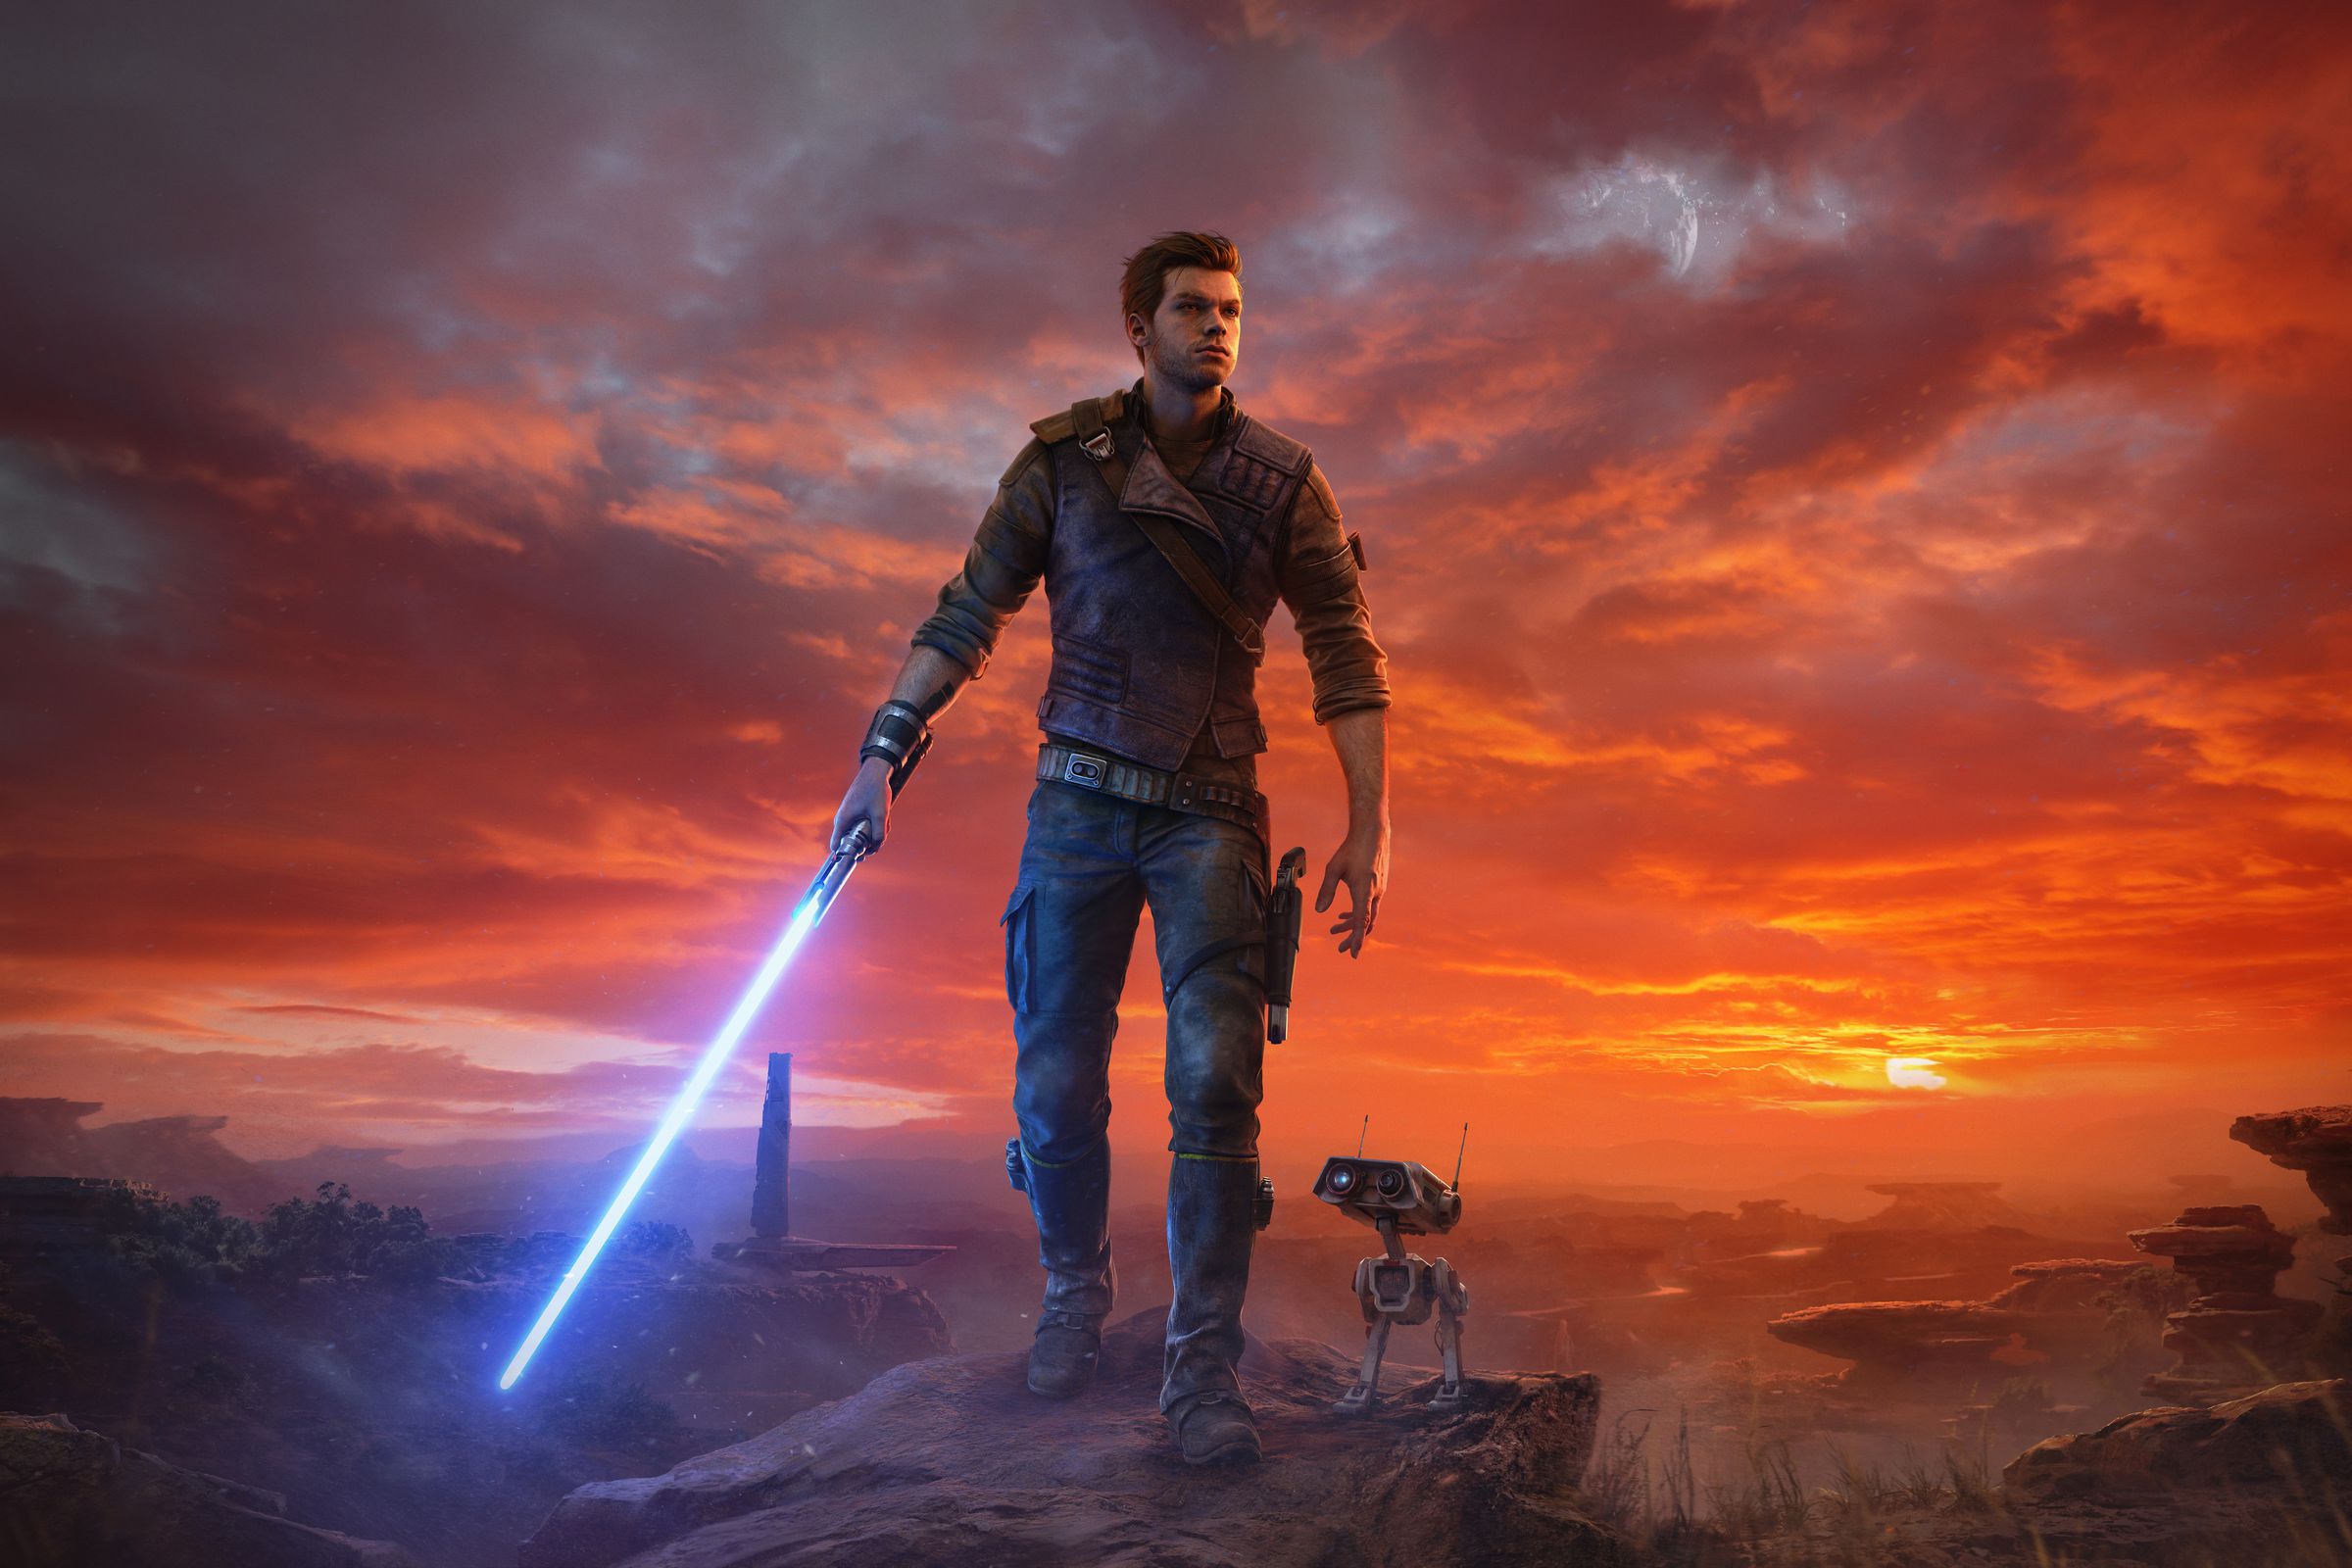 Das Cover für Star Wars Jedi: Survivor zeigt die Hauptfigur Cal Kestis und seinen Droiden BD-1 vor einer trostlosen Kulisse.